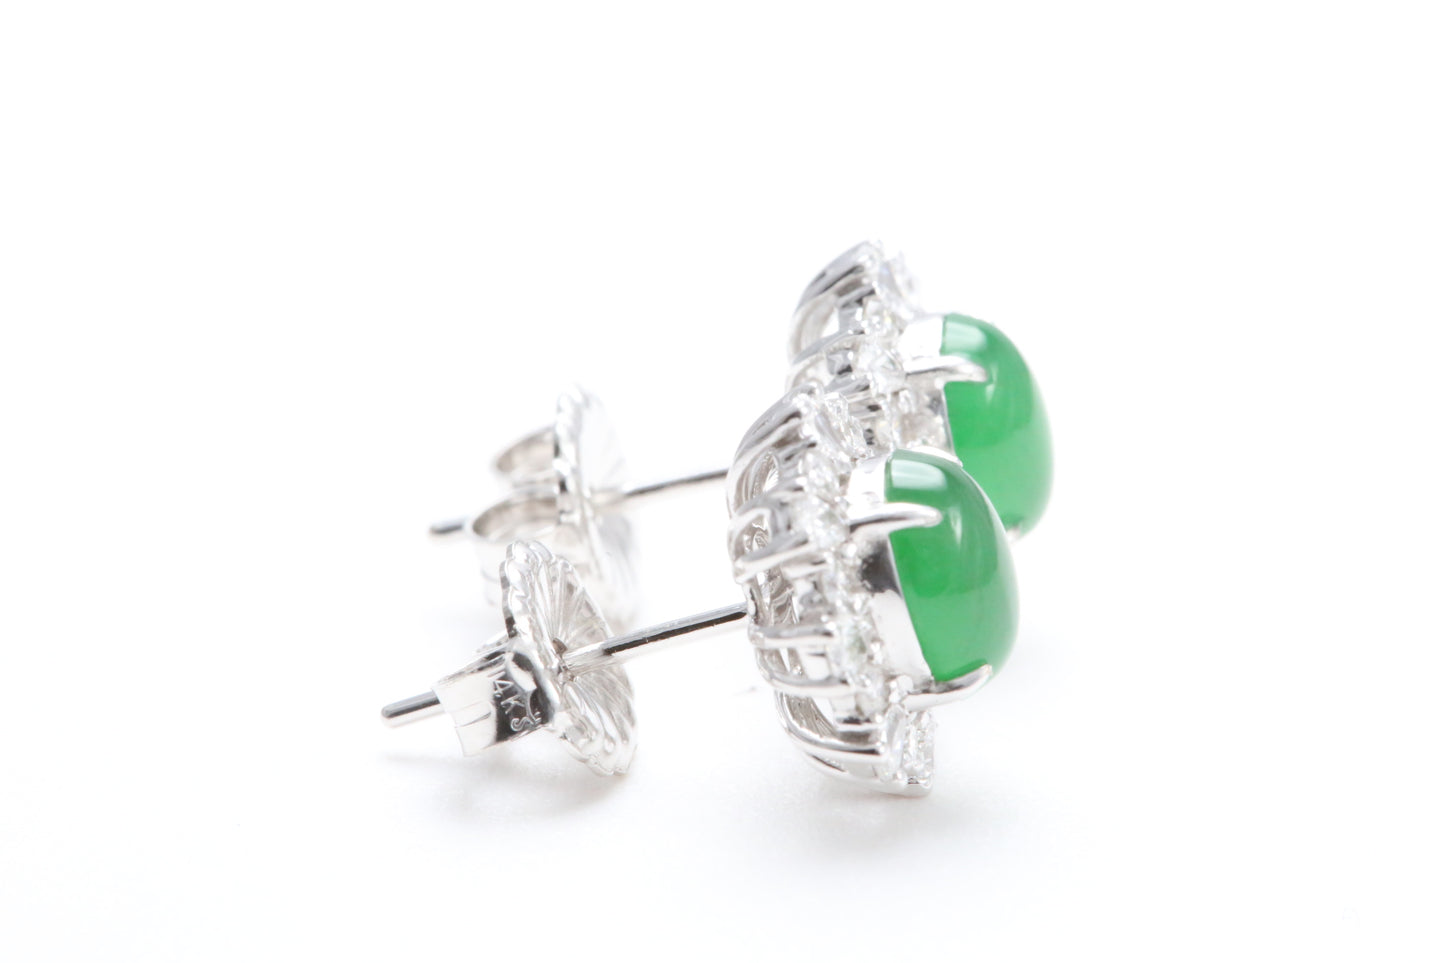 Jadeite and Diamond Earrings